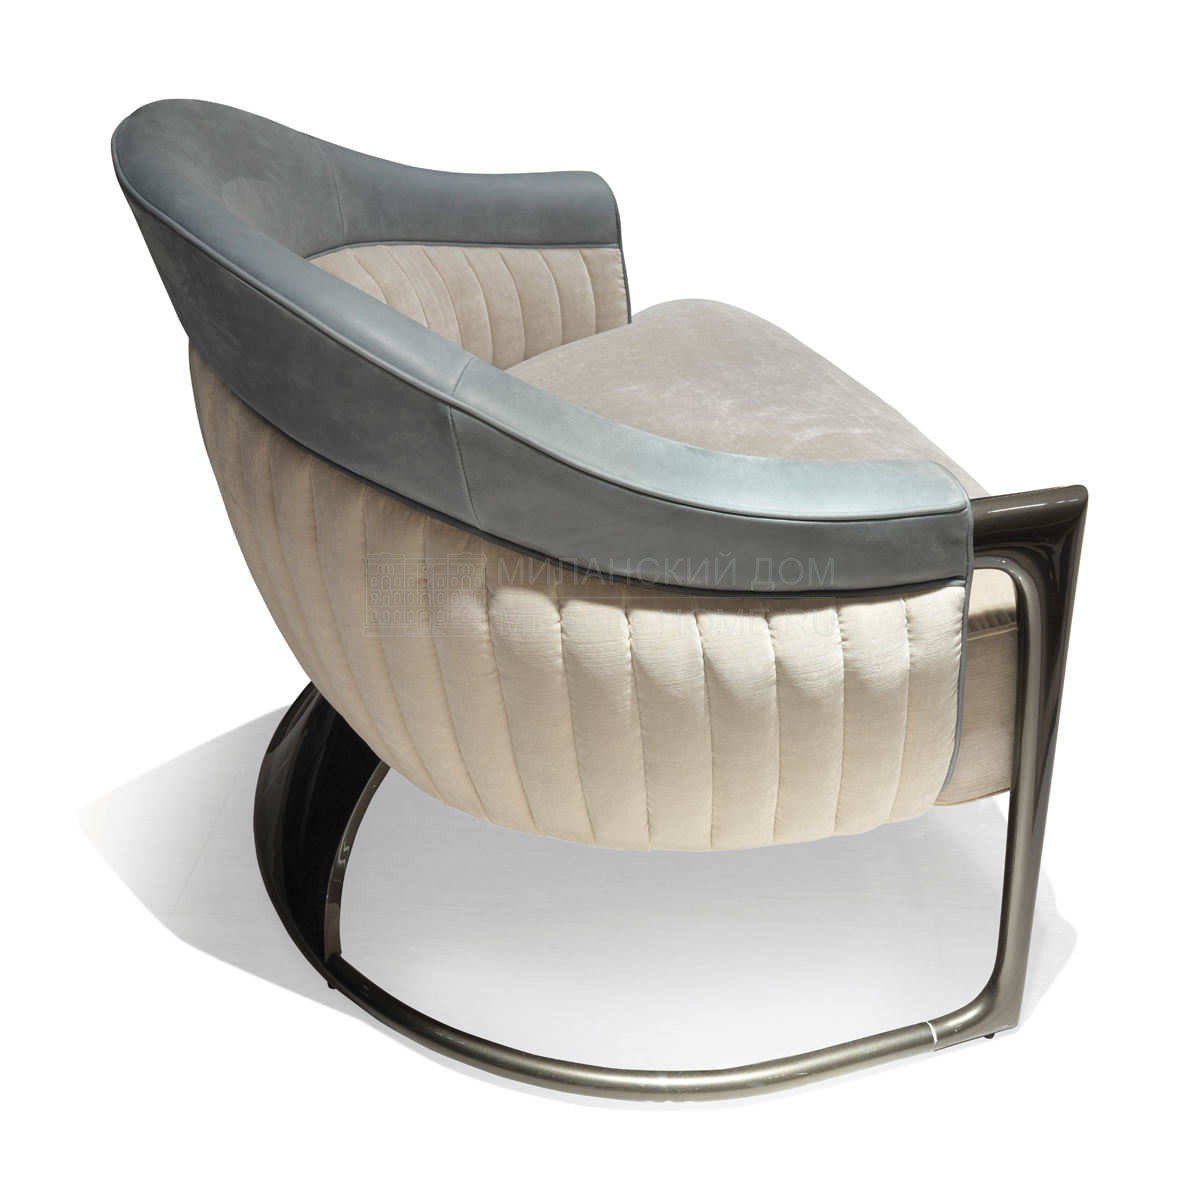 Круглое кресло Grace armchair из Италии фабрики IPE CAVALLI VISIONNAIRE